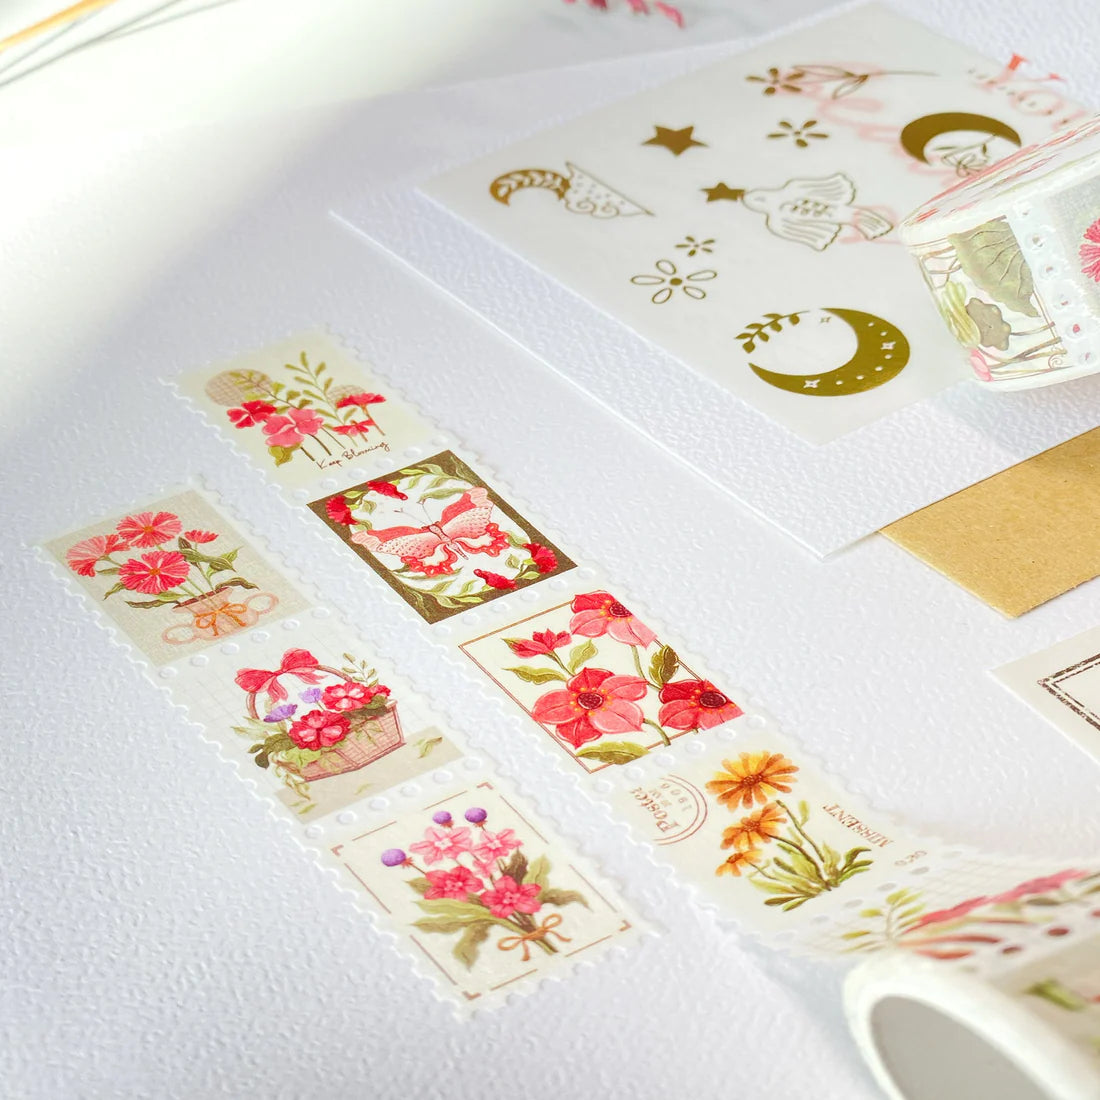 Le masking tape Timbres de fleurs contient 10 timbres au design unique avec des fleurs et des papillons. Vous pouvez utiliser ce masking tape pour: préparer votre bullet journal, décorer votre journal intime, marquer de dates importantes dans votre agenda et beaucoup plus que ça.